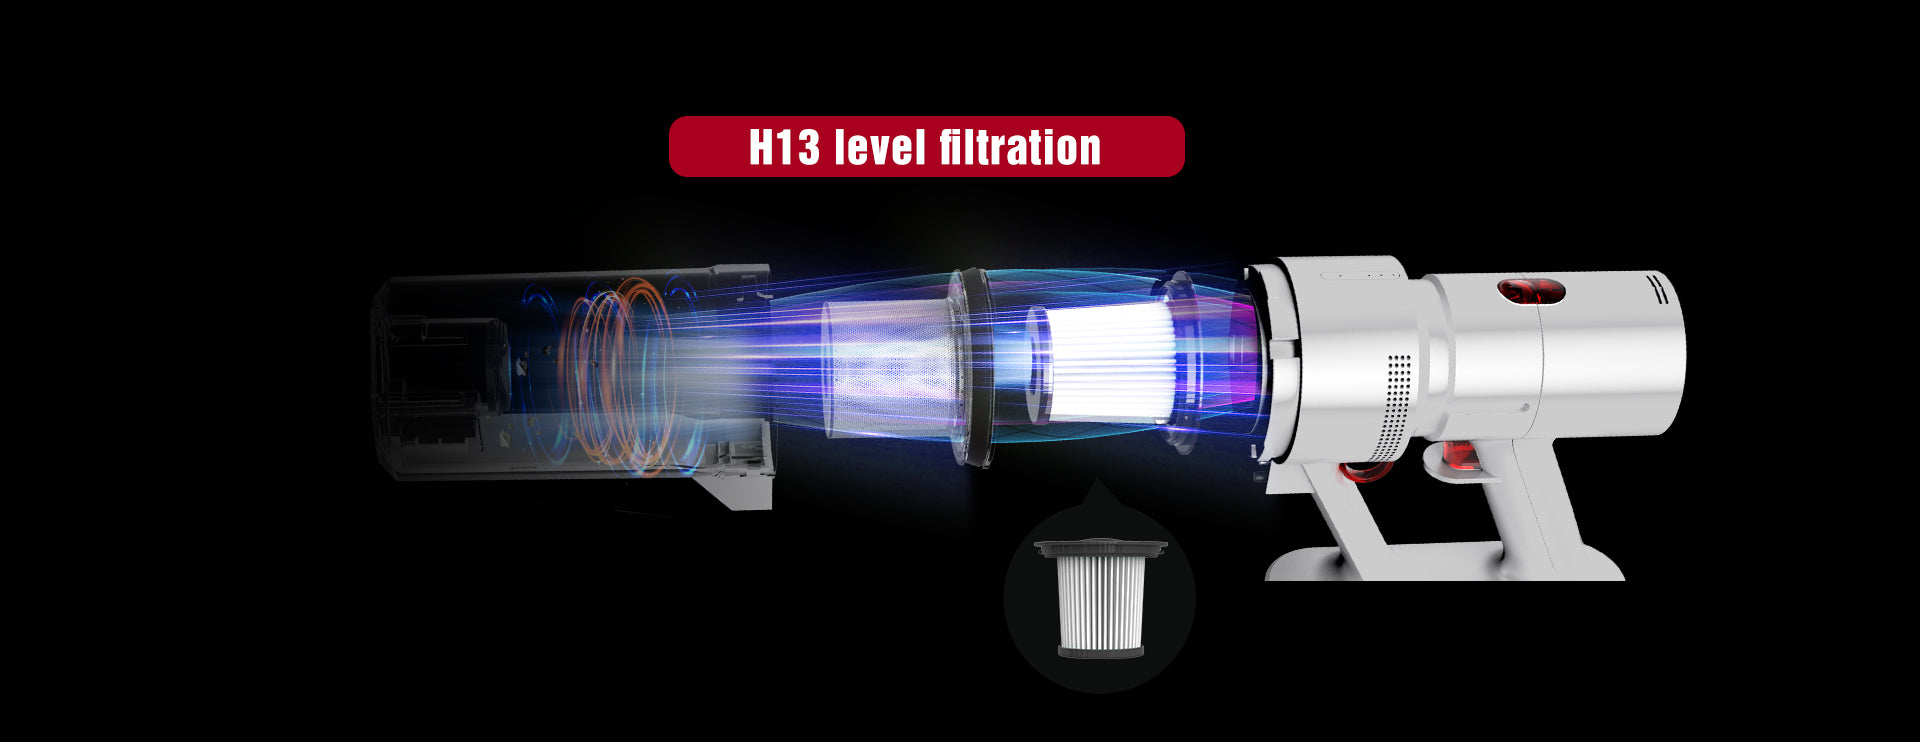 H13_level_filtration